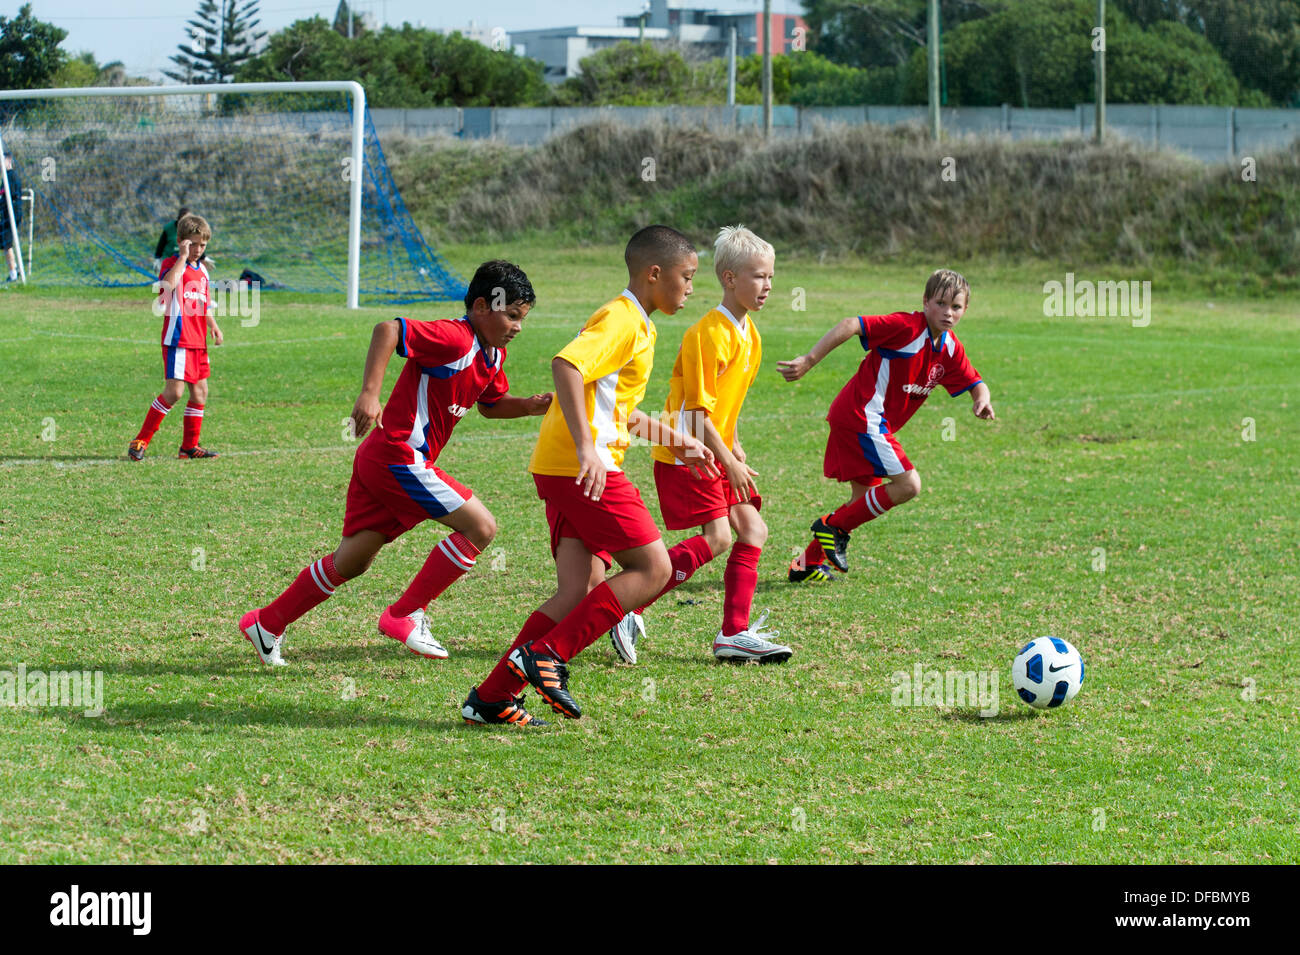 Joueurs de football junior courir après la balle, Cape Town, Afrique du Sud Banque D'Images